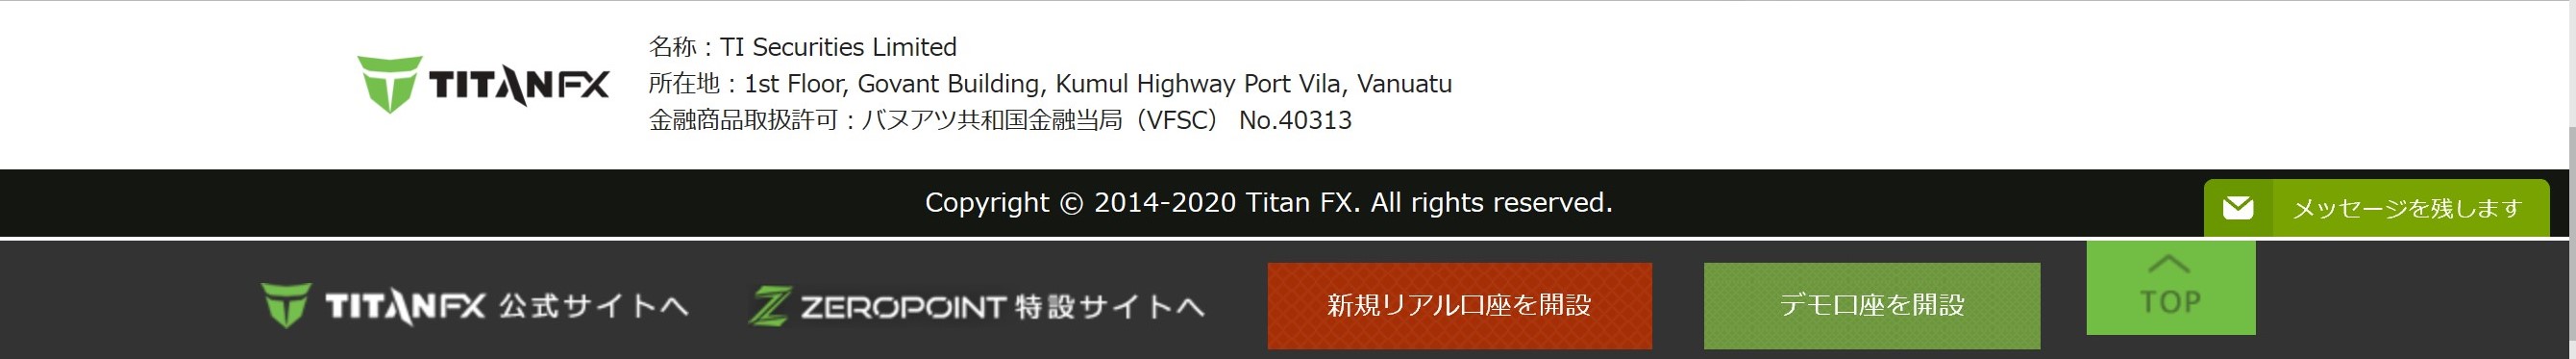 海外FX TITAN FX バヌアツ金融サービス委員会(VFSC)ライセンス(登録番号：40313)を取得した業者です！